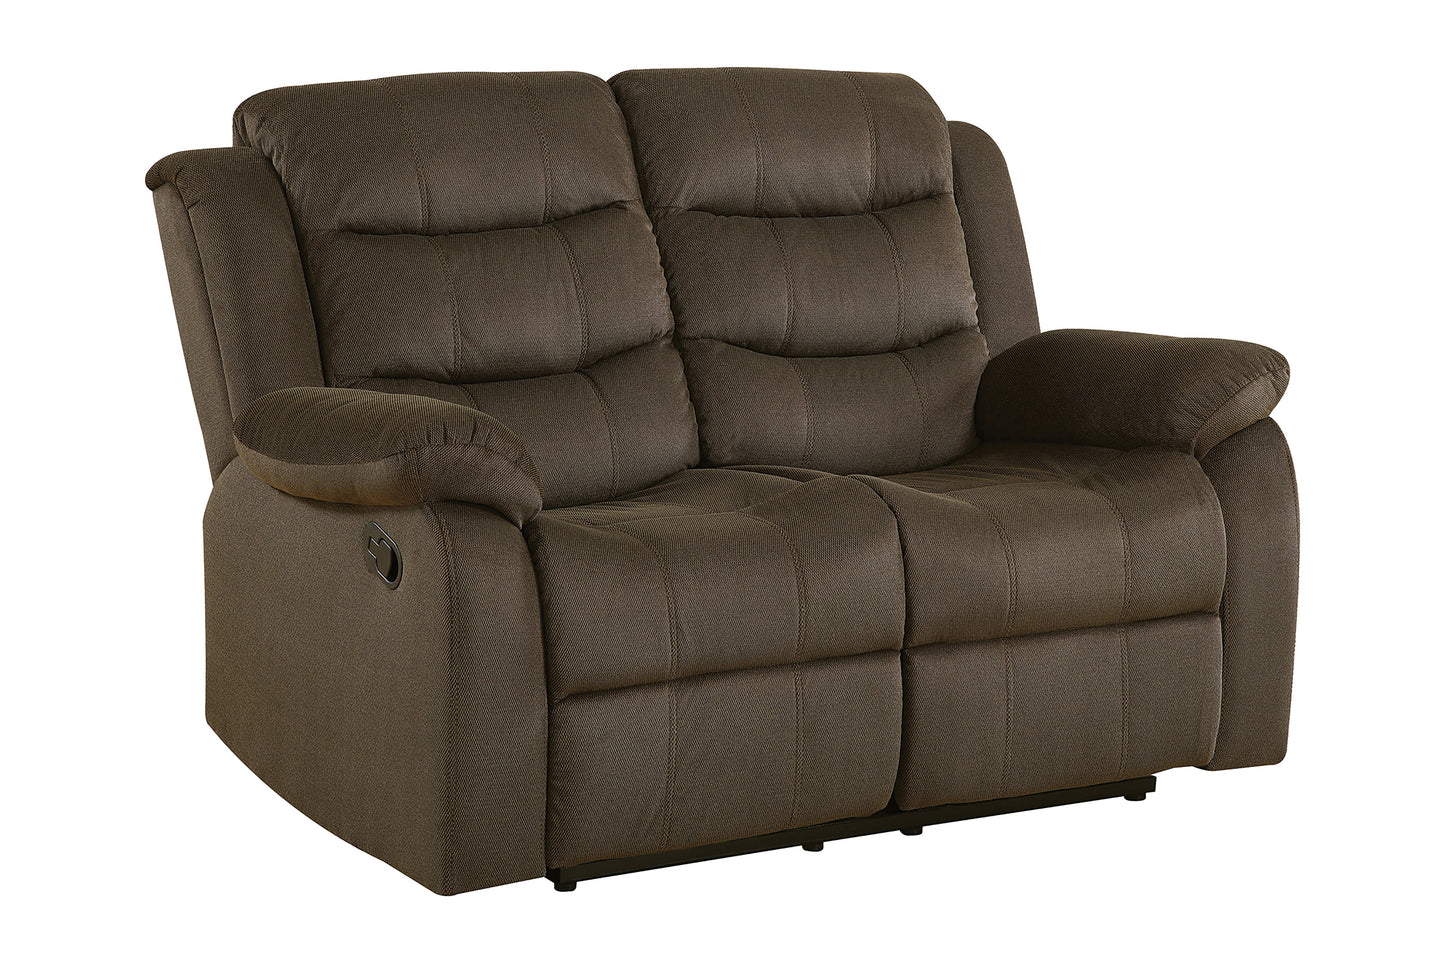 Rodman Upholstered Tufted Living Room Set Olive Brown - 601881